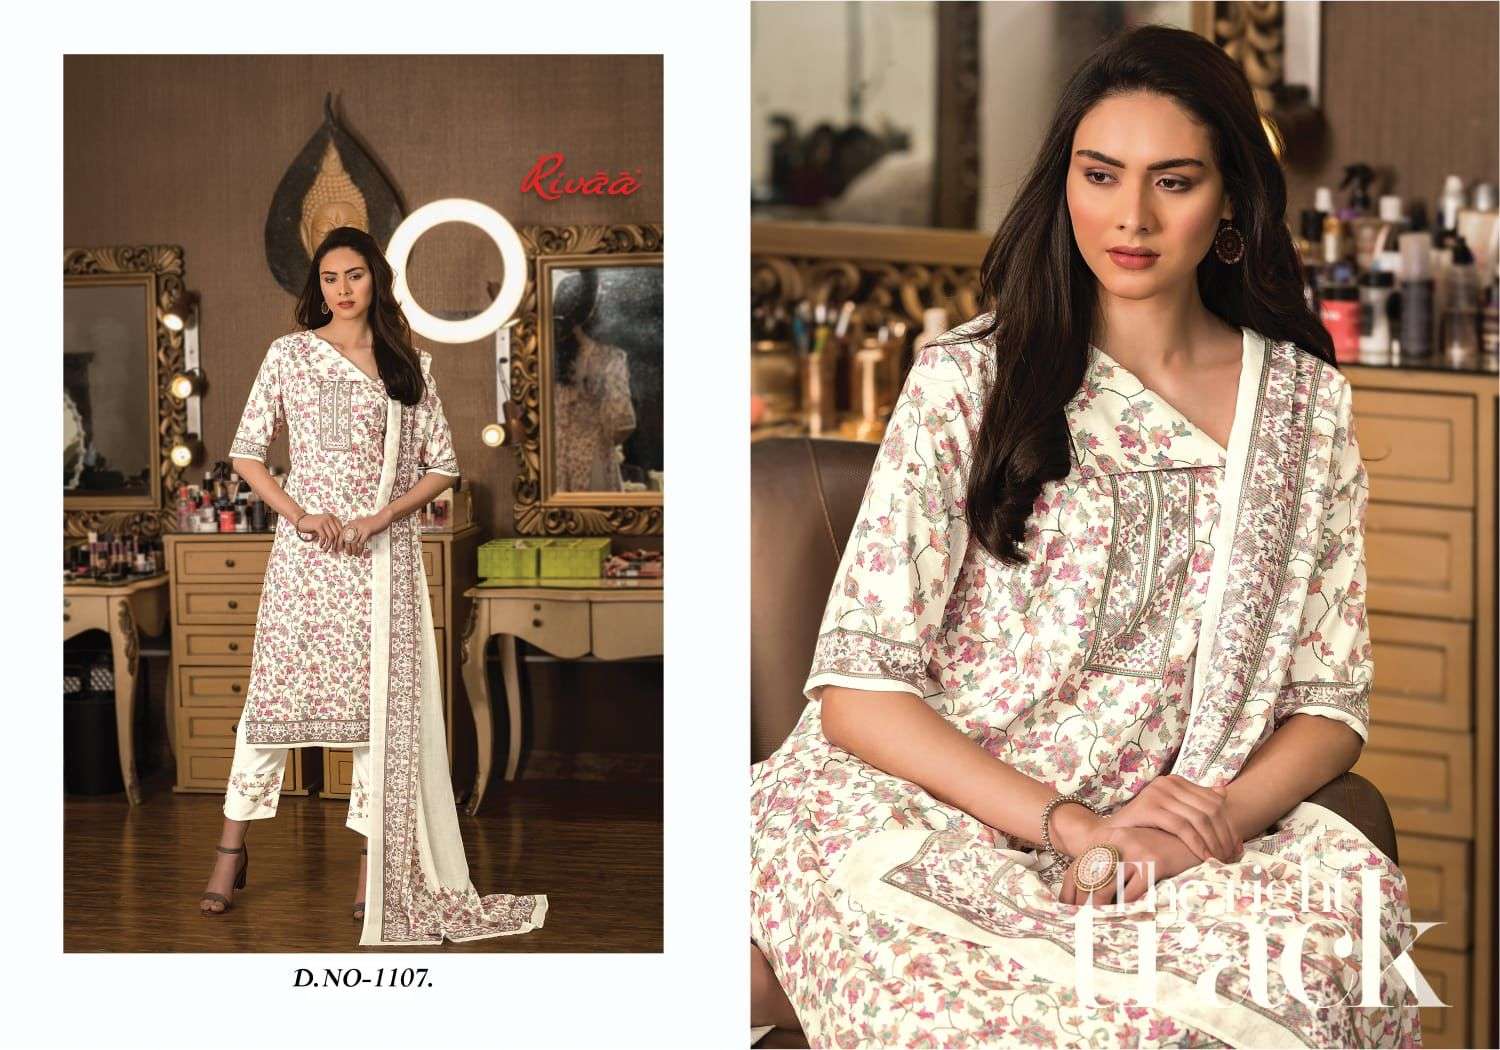 rivaa exports naina 1101-1107 series indian designer salwar kameez catalogue wholesaler surat 